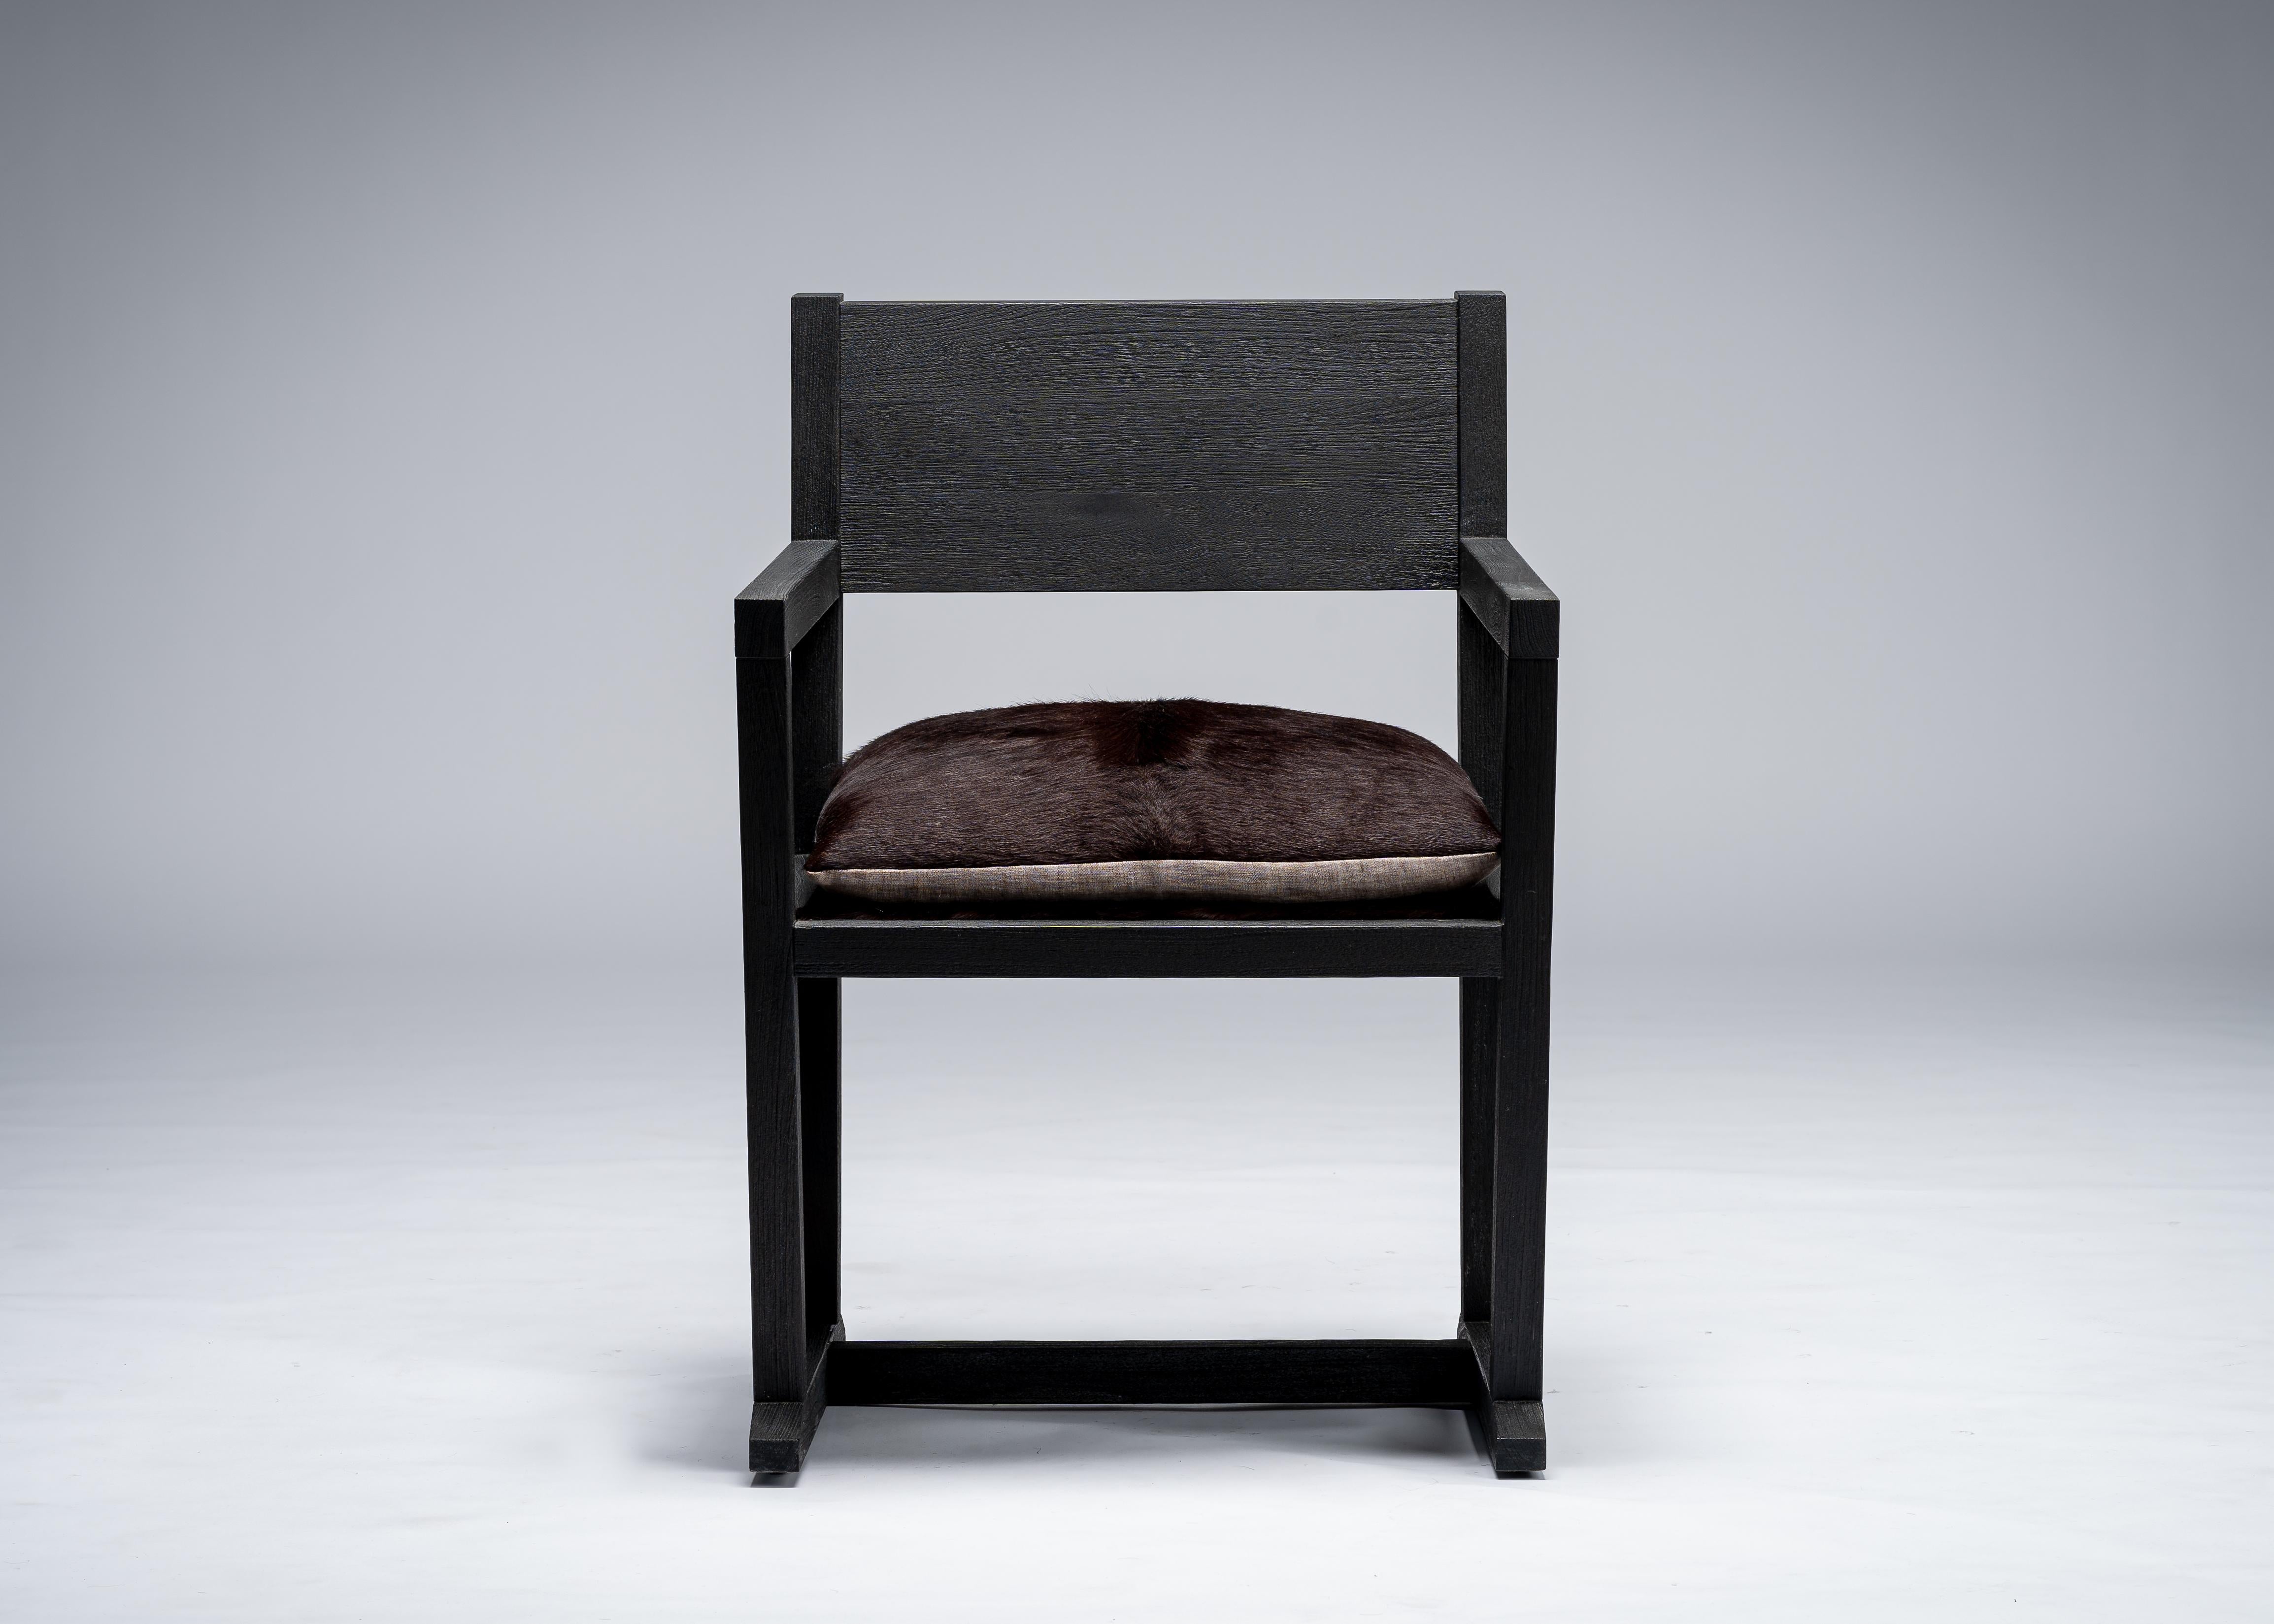 LOUIS Stuhl von Mandy Graham

LOUIS
L01 - Stuhl / Sessel / Schreibtisch / Esszimmerstuhl
Sitz aus sandgestrahlter Eiche und haarigem Rindsleder
Maße: 24